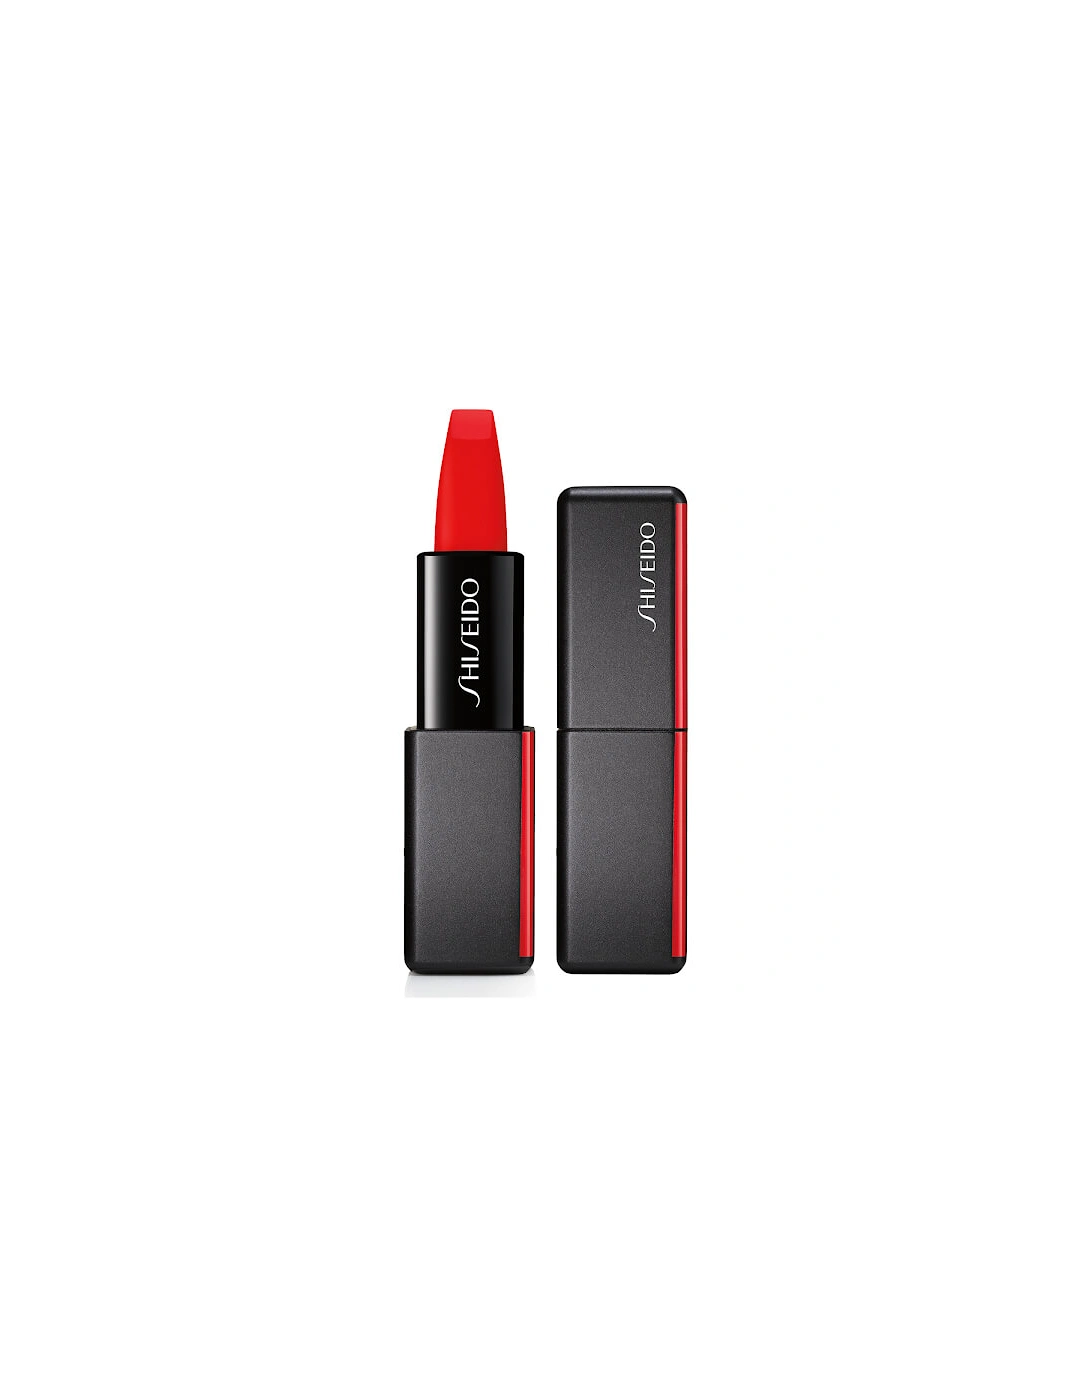 ModernMatte Powder Lipstick - Night Life 510, 2 of 1